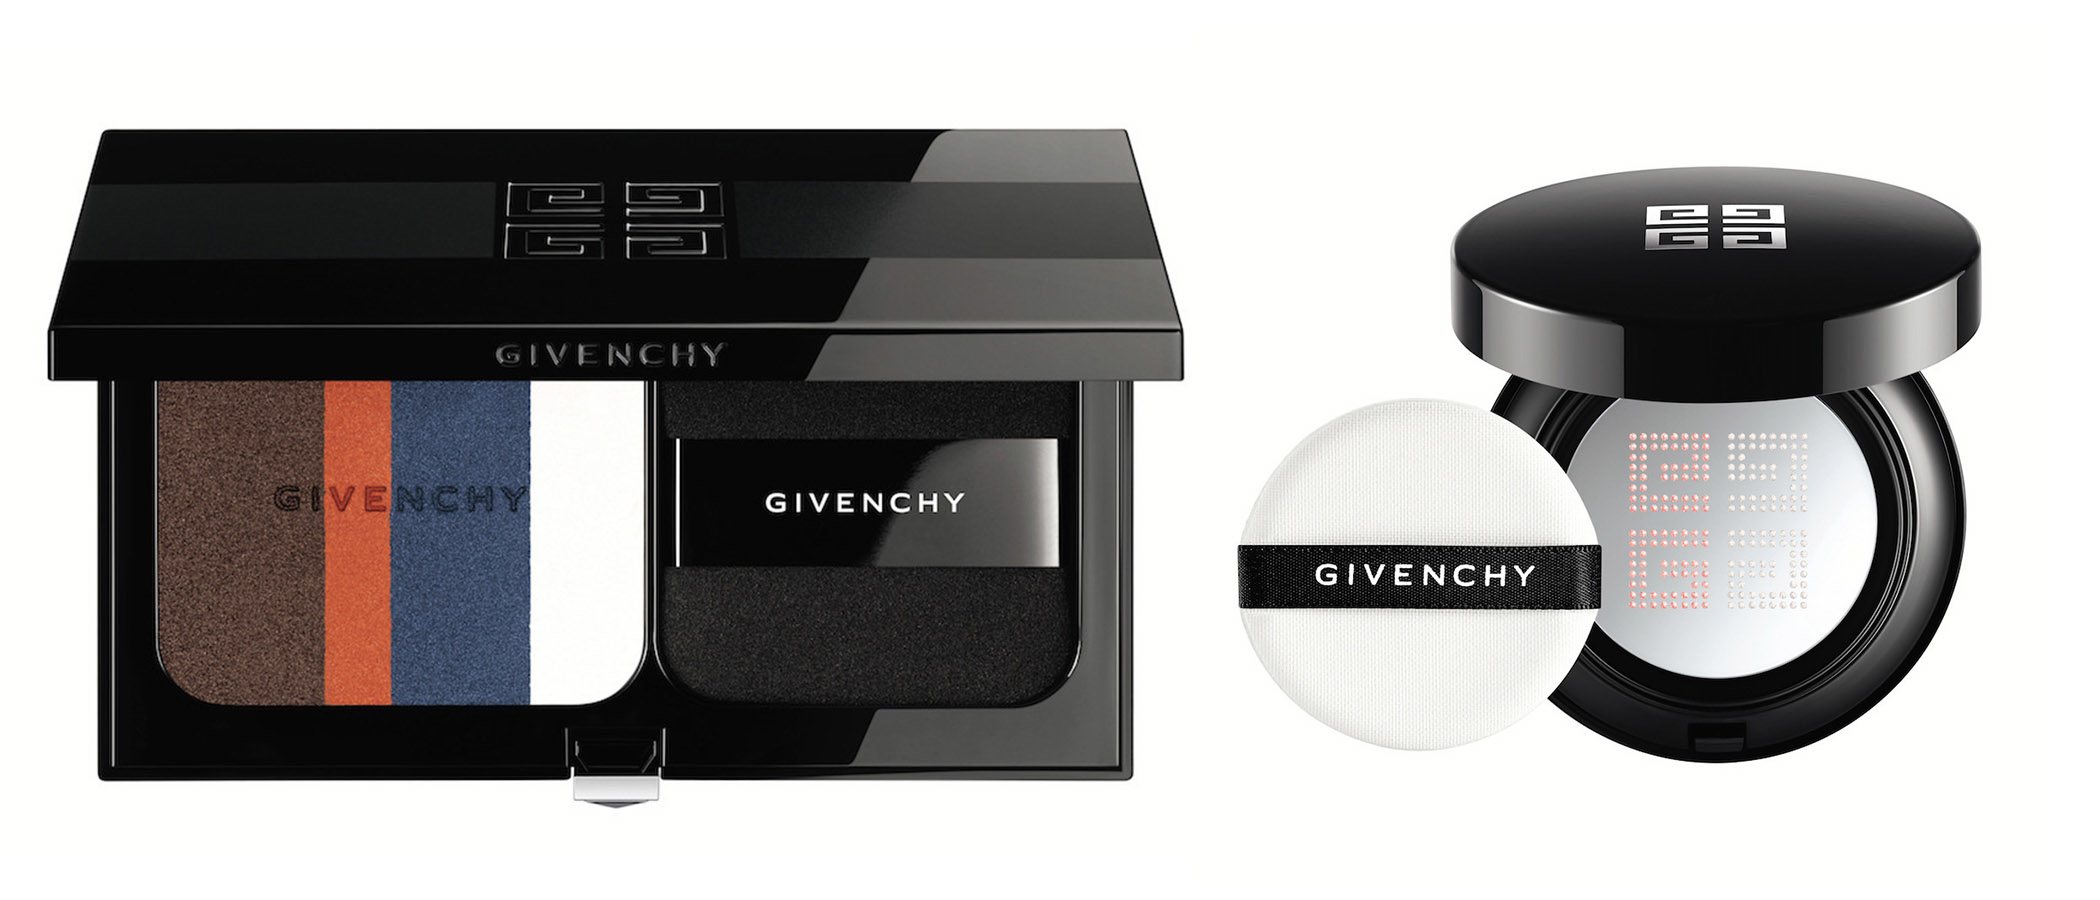 Givenchy traslada la magia de la costura a su nueva y sofisticada colección de maquillaje 'Couture Outlines'